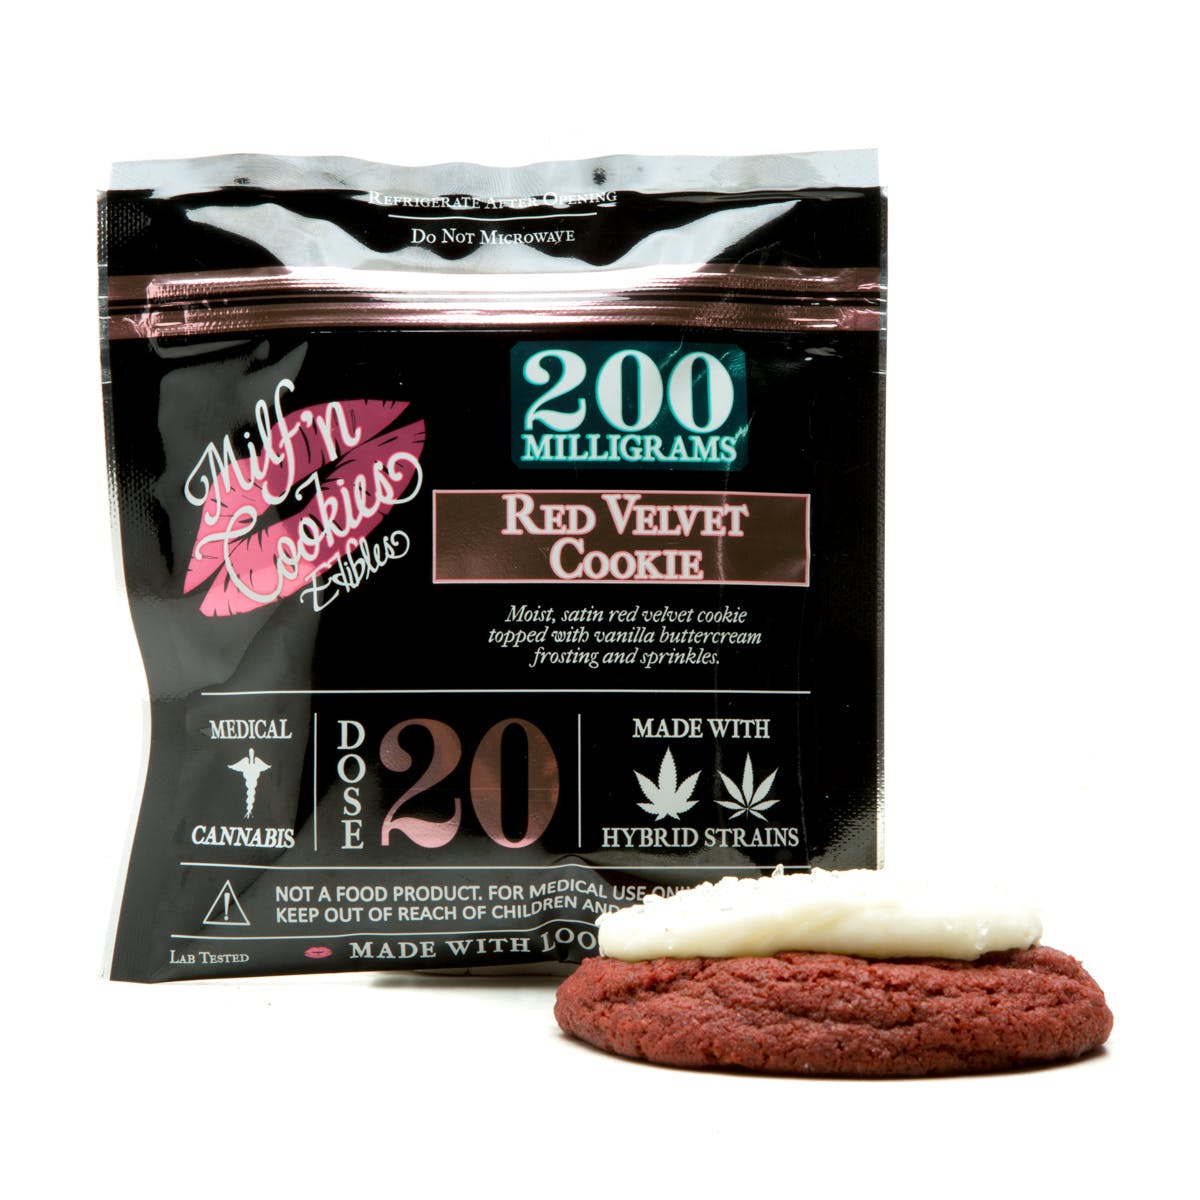 marijuana-dispensaries-dope-girls-la-in-hollywood-red-velvet-cookie-200mg